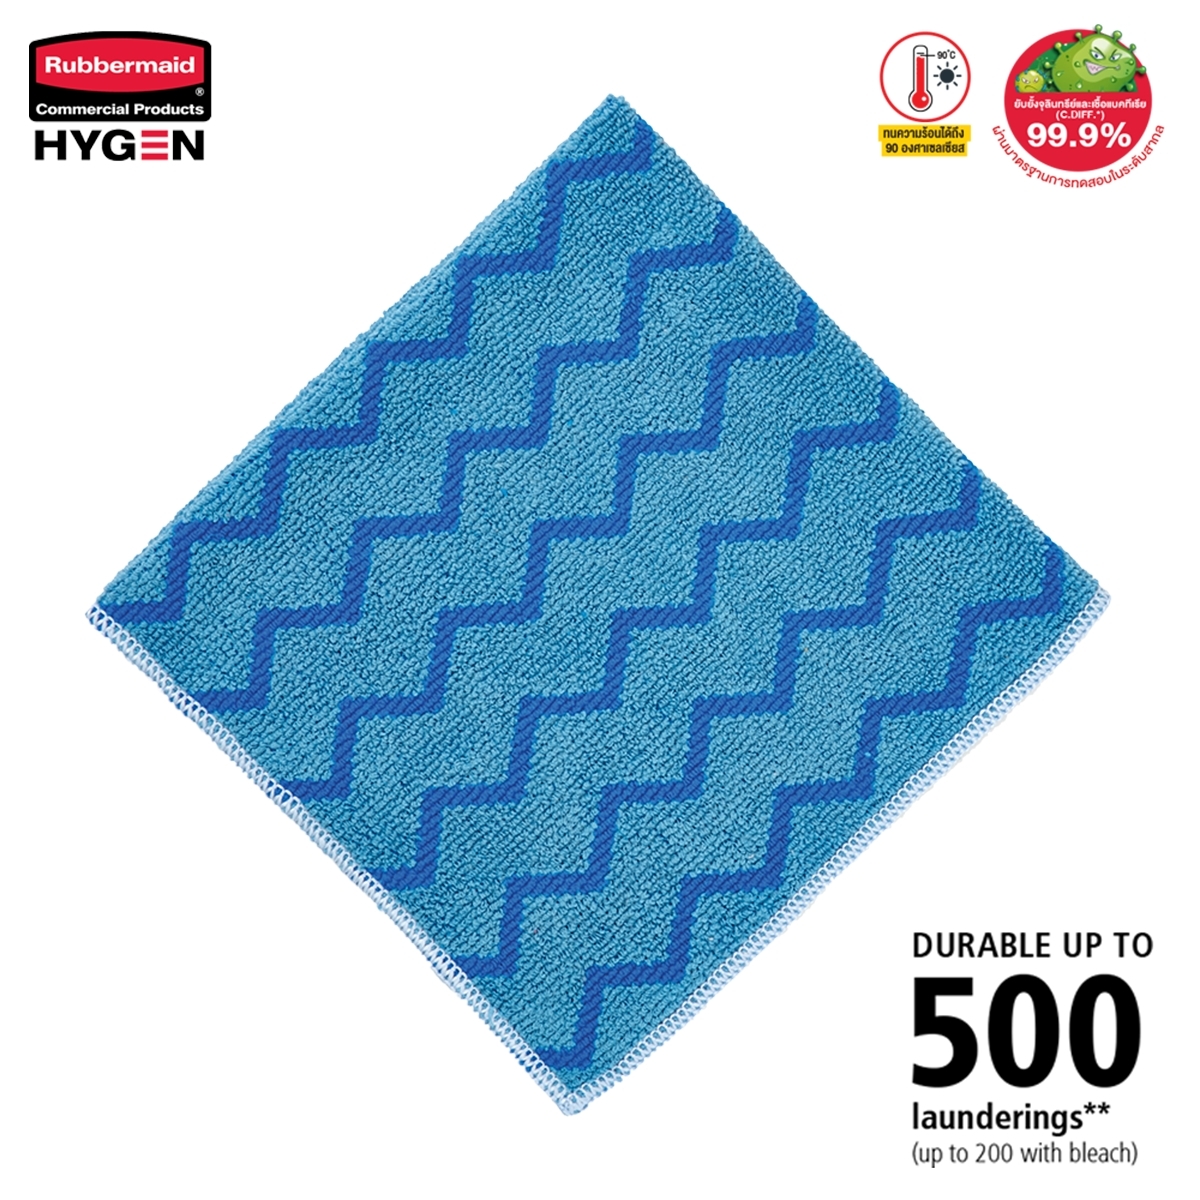 ผ้าไมโครไฟเบอร์ HYGEN™ ขนาด 16 นิ้ว สีน้ำเงิน แบบซิกแซก เกรดพรีเมี่ยม ซักน้ำร้อน และเข้าเครื่องอบได้ถึง 92°C